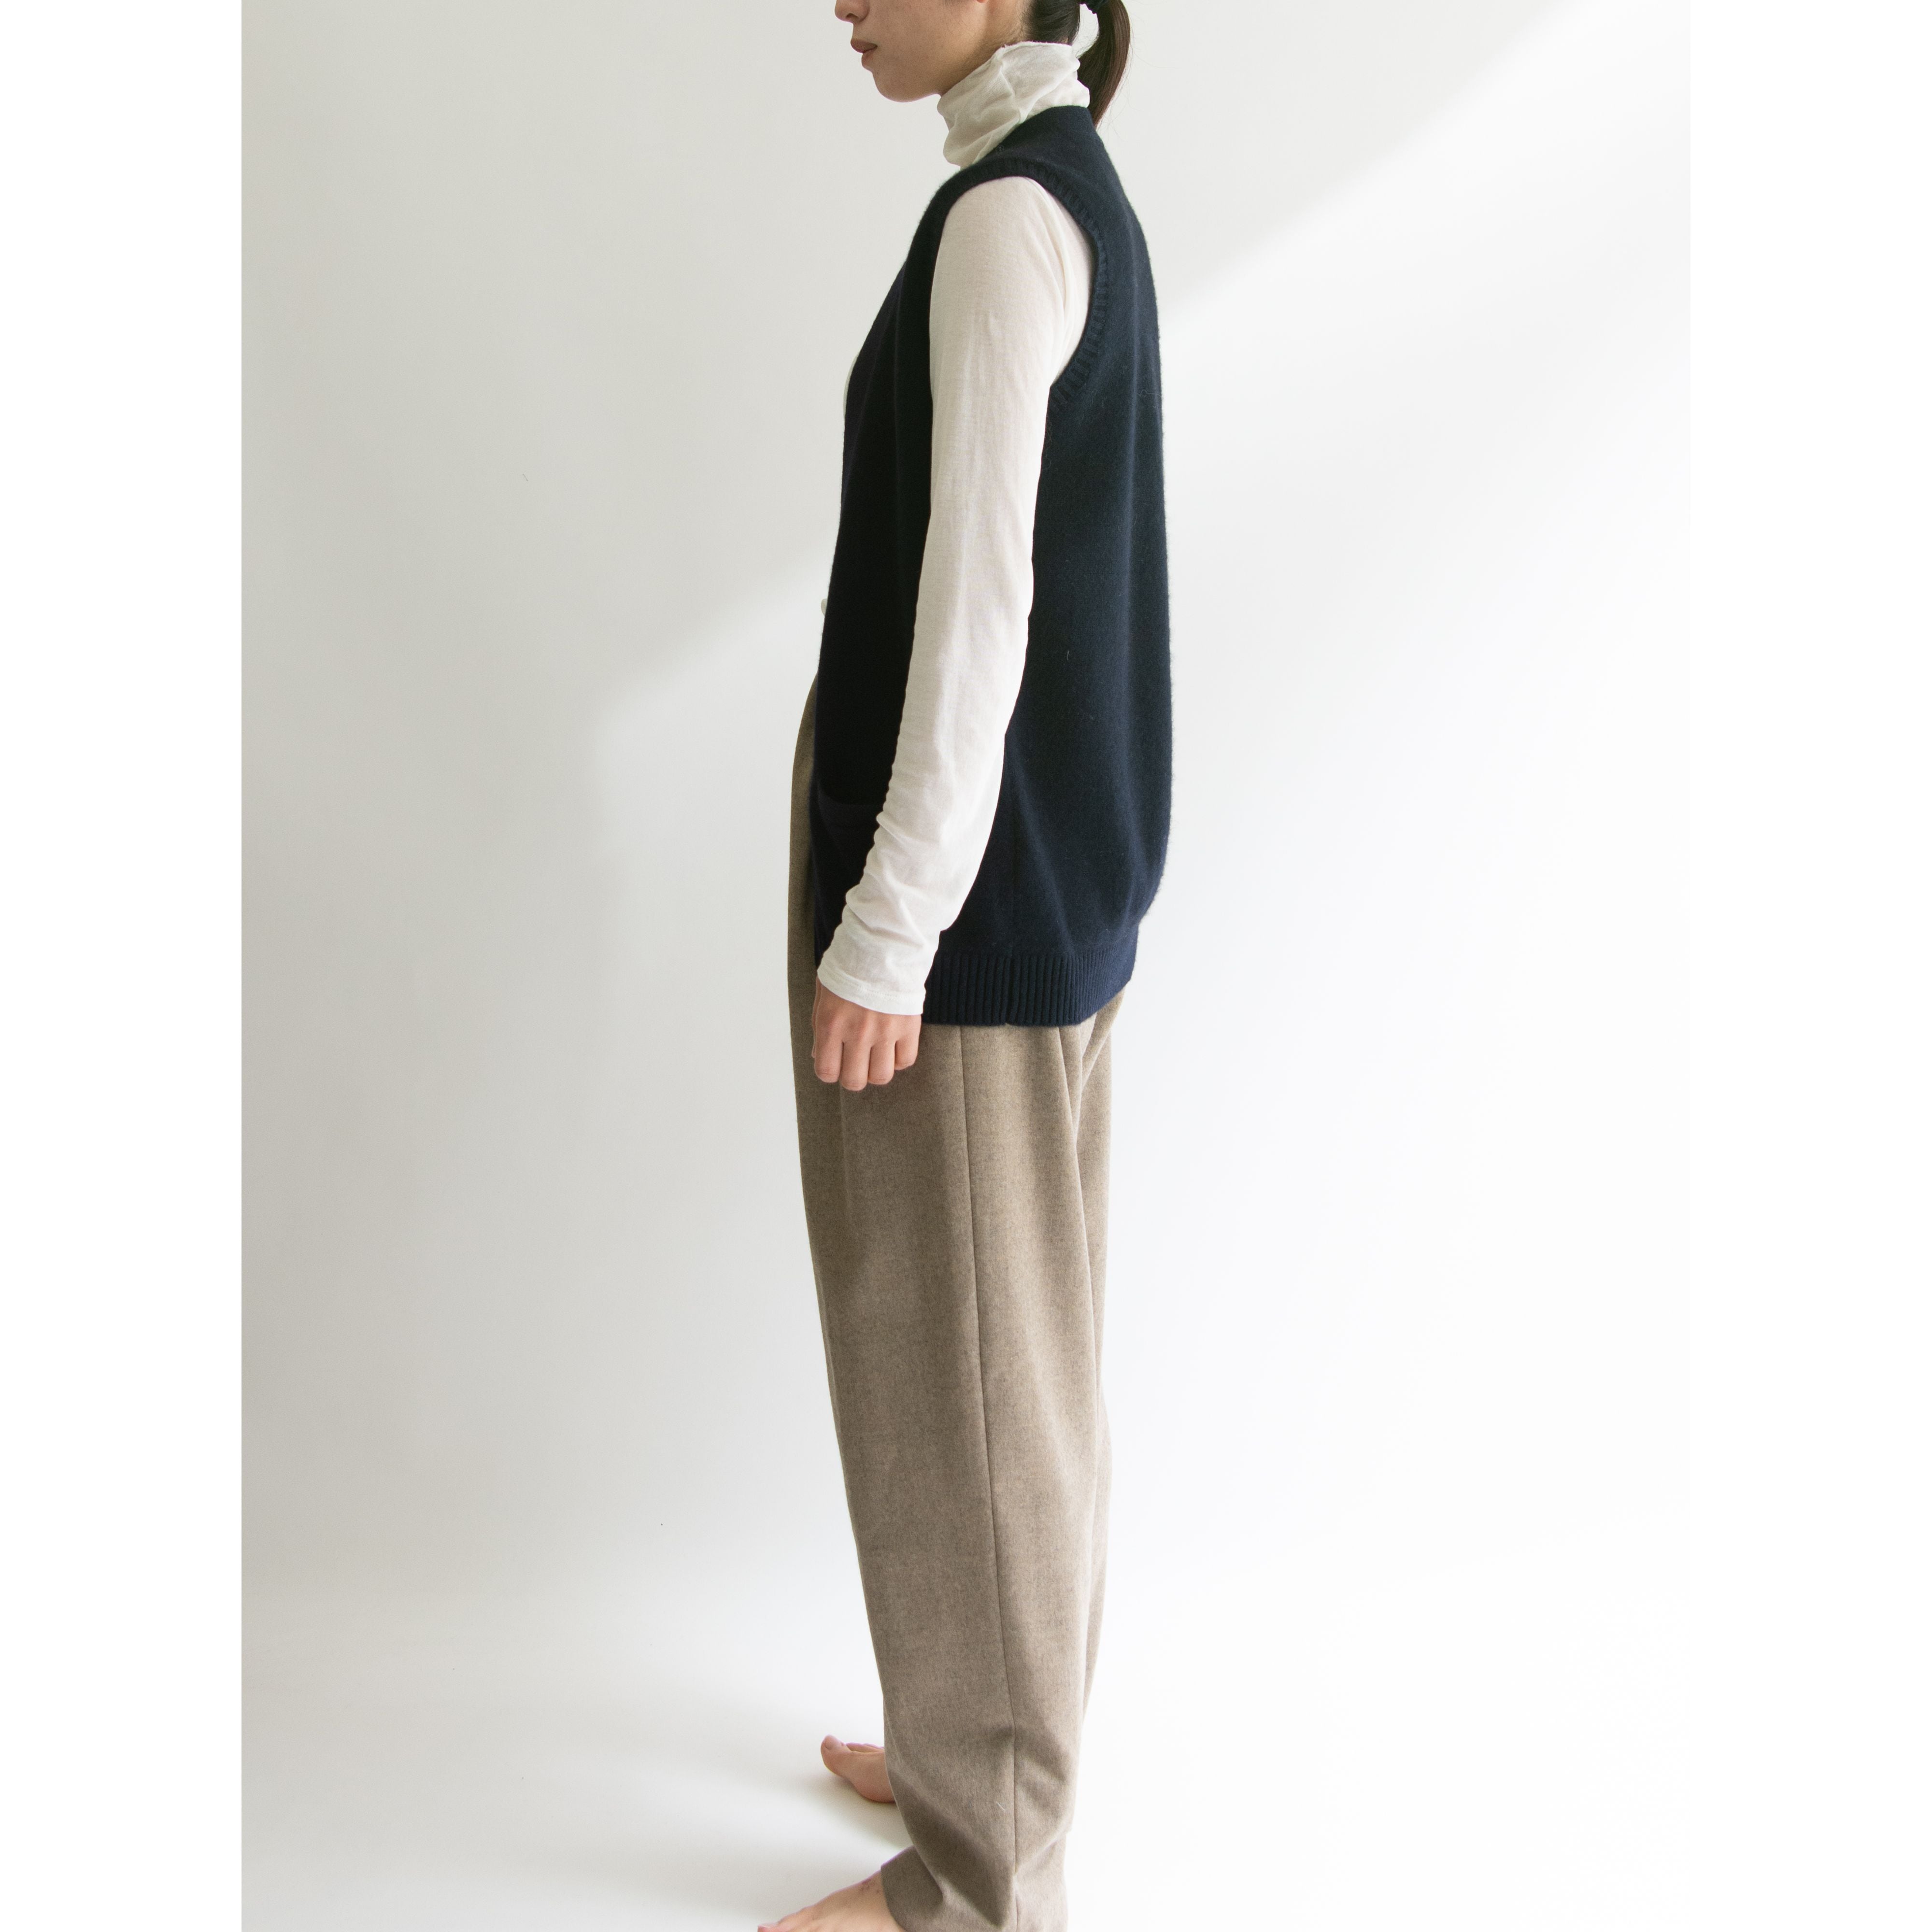 RALPH LAUREN】Made in Hong Kong 80's 100% Cashmere Knit Vest ...